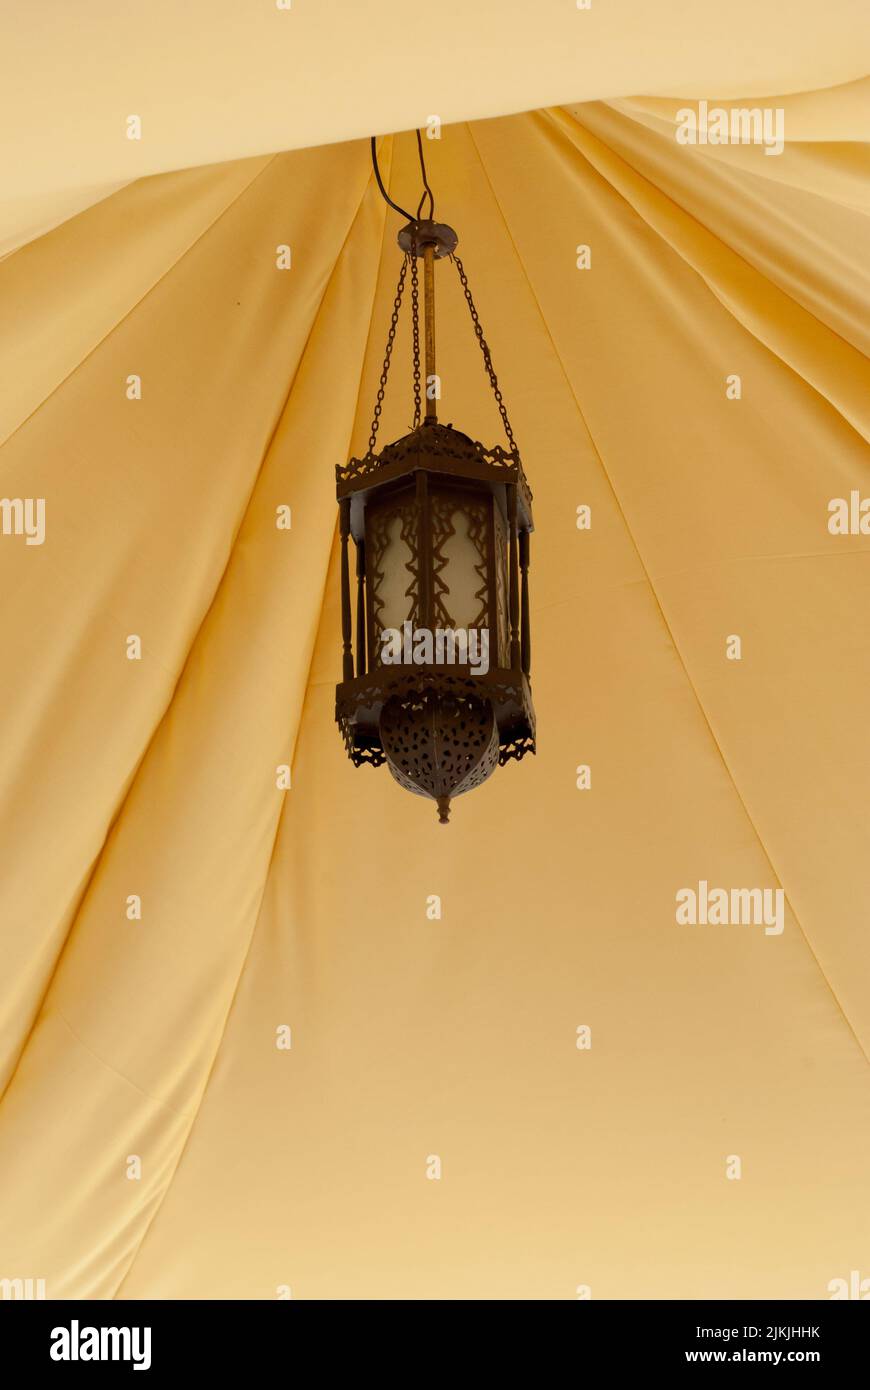 Eine braun verzierte Vintage-Laterne, die in einem gelben Zelt hängt Stockfoto